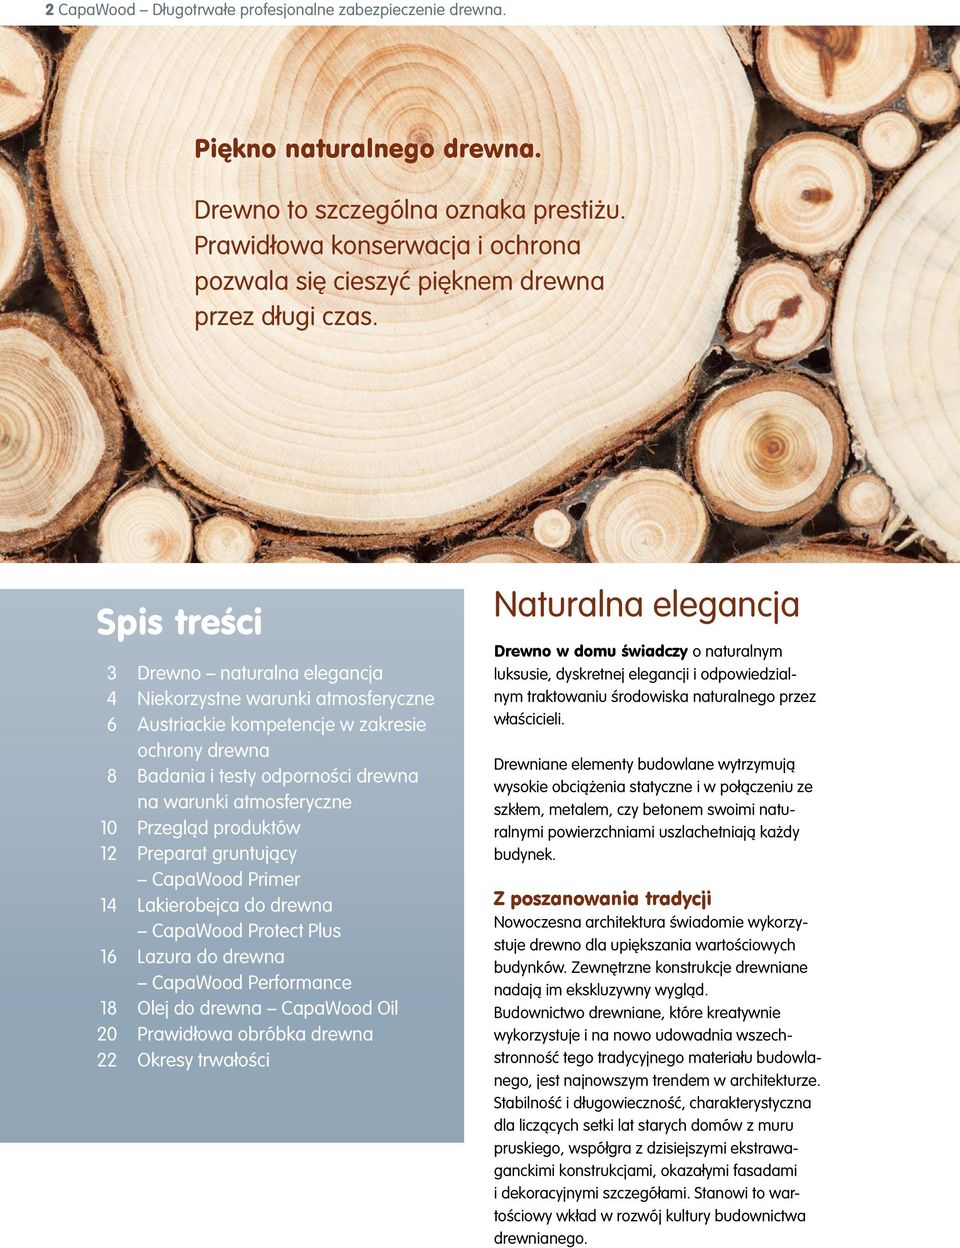 Spis treści 3 Drewno naturalna elegancja 4 Niekorzystne warunki atmosferyczne 6 Austriackie kompetencje w zakresie ochrony drewna 8 Badania i testy odporności drewna na warunki atmosferyczne 10